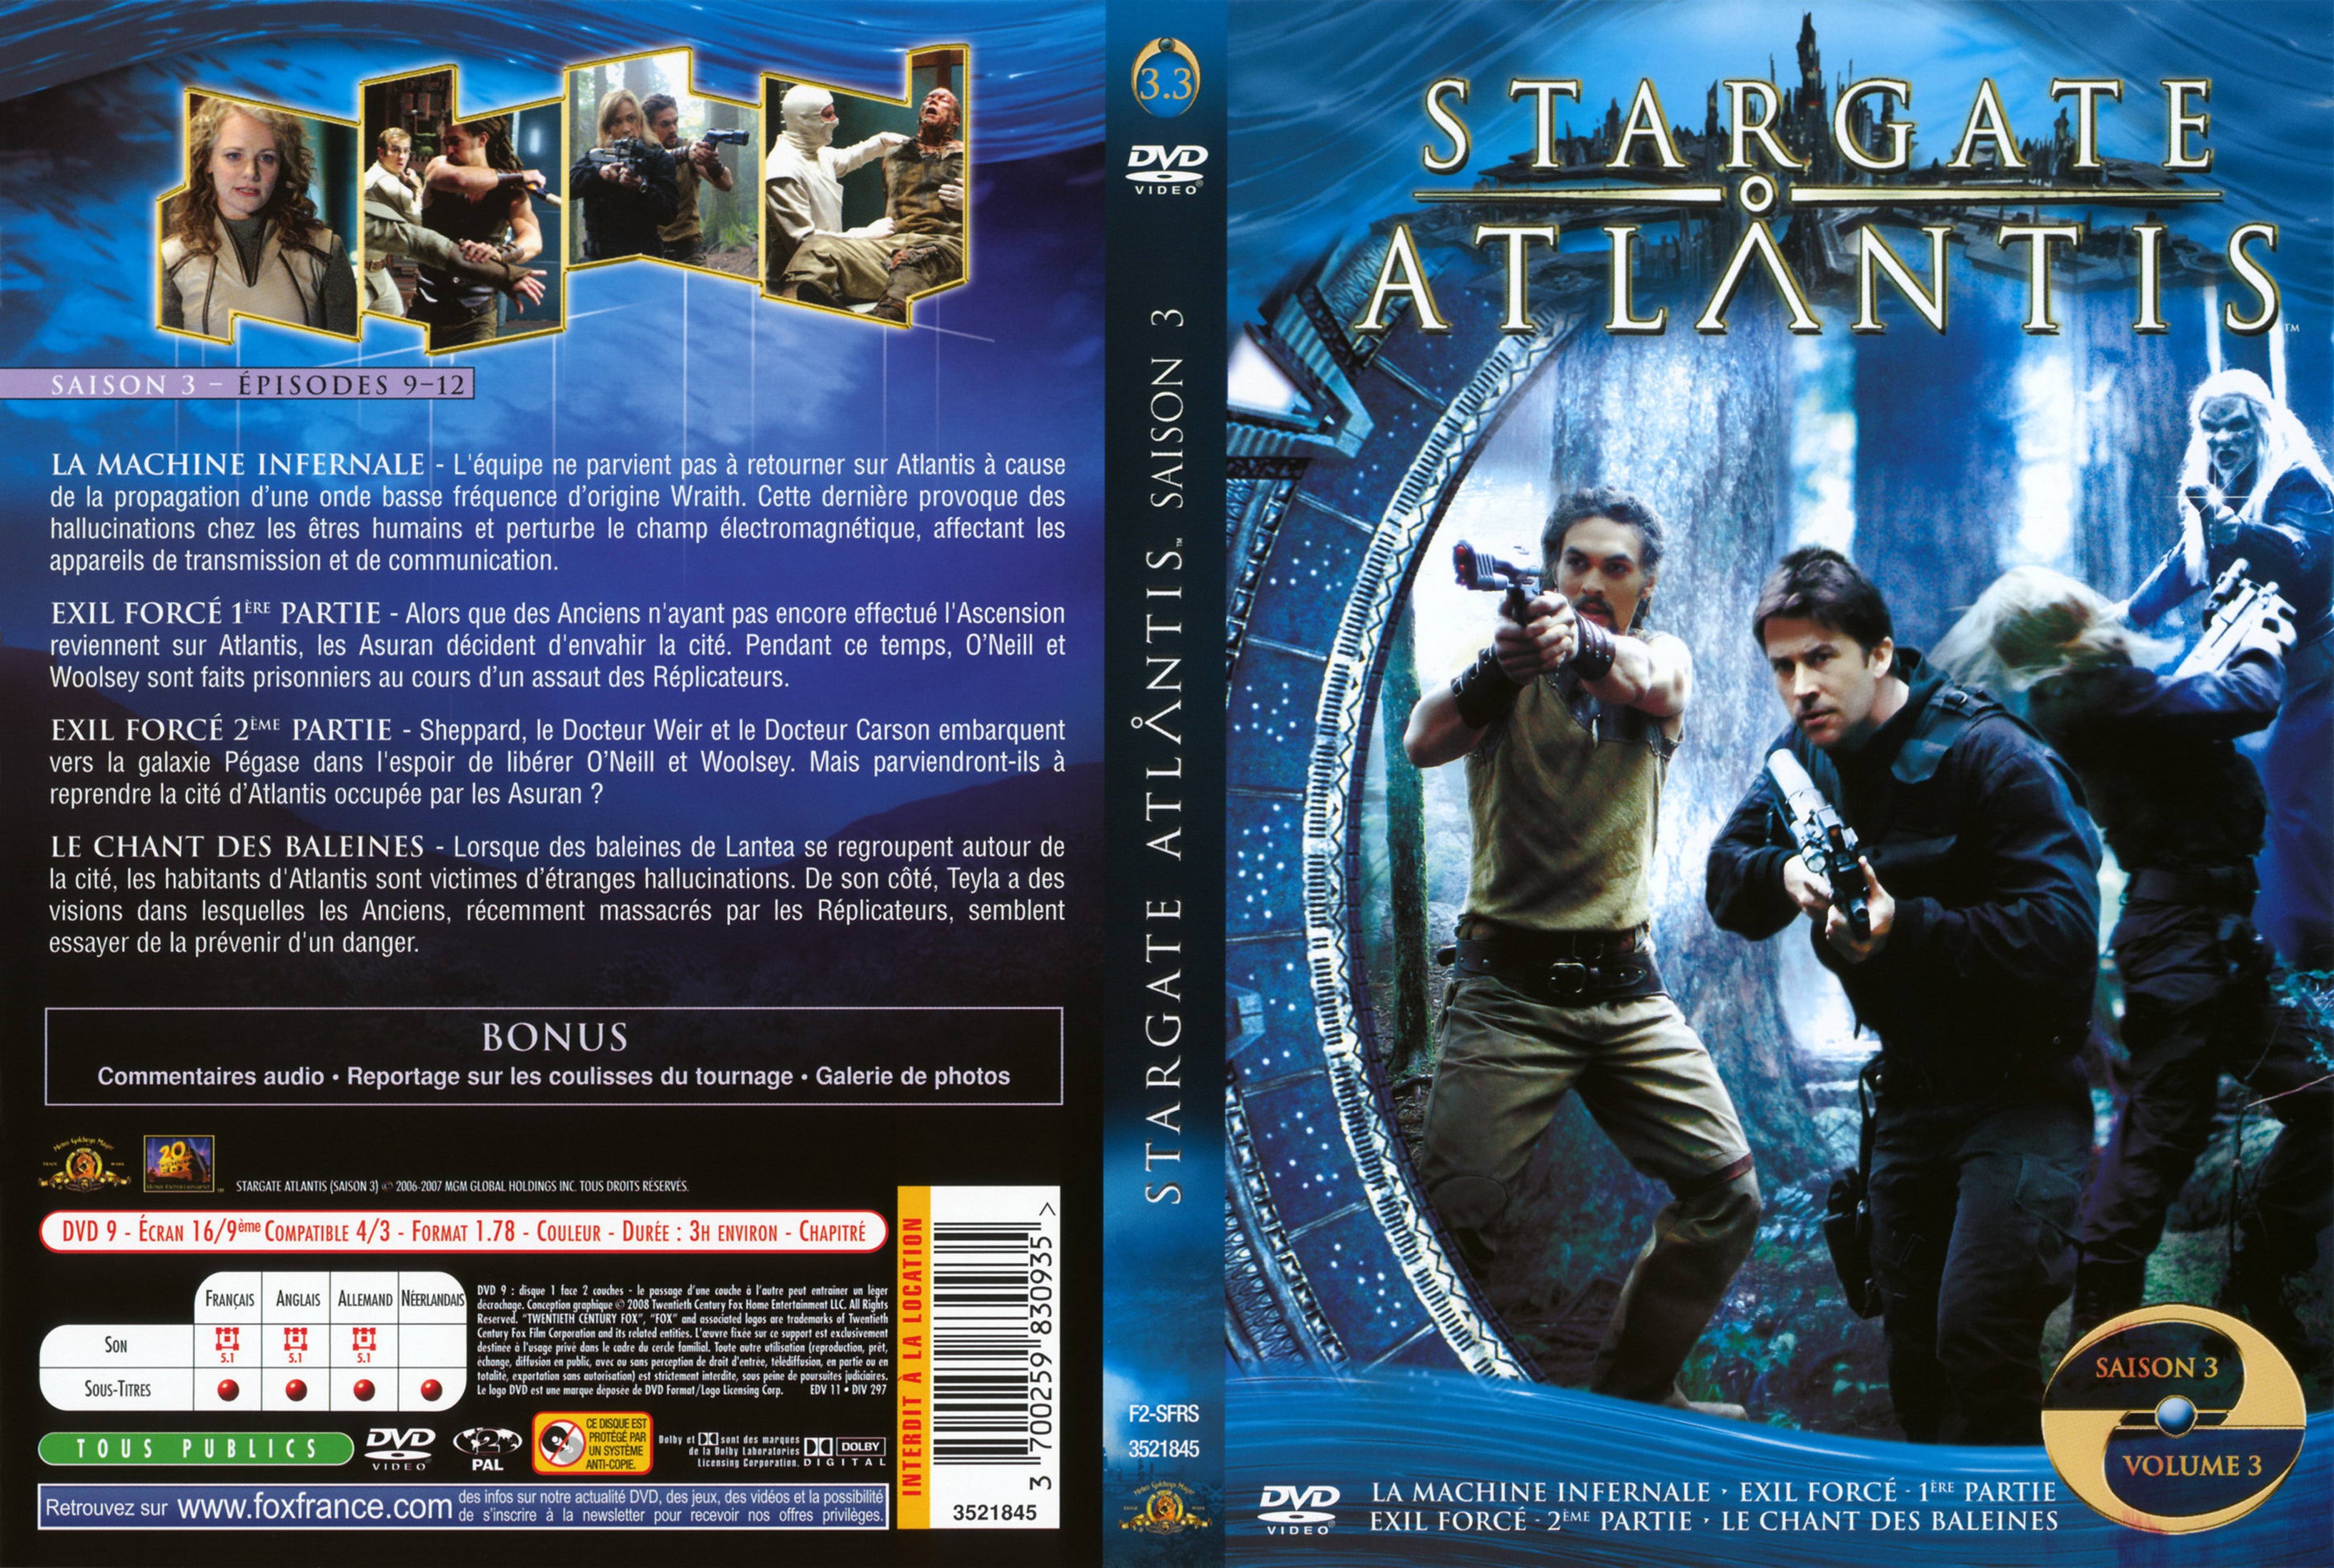 Jaquette DVD Stargate Atlantis Saison 3 vol 3